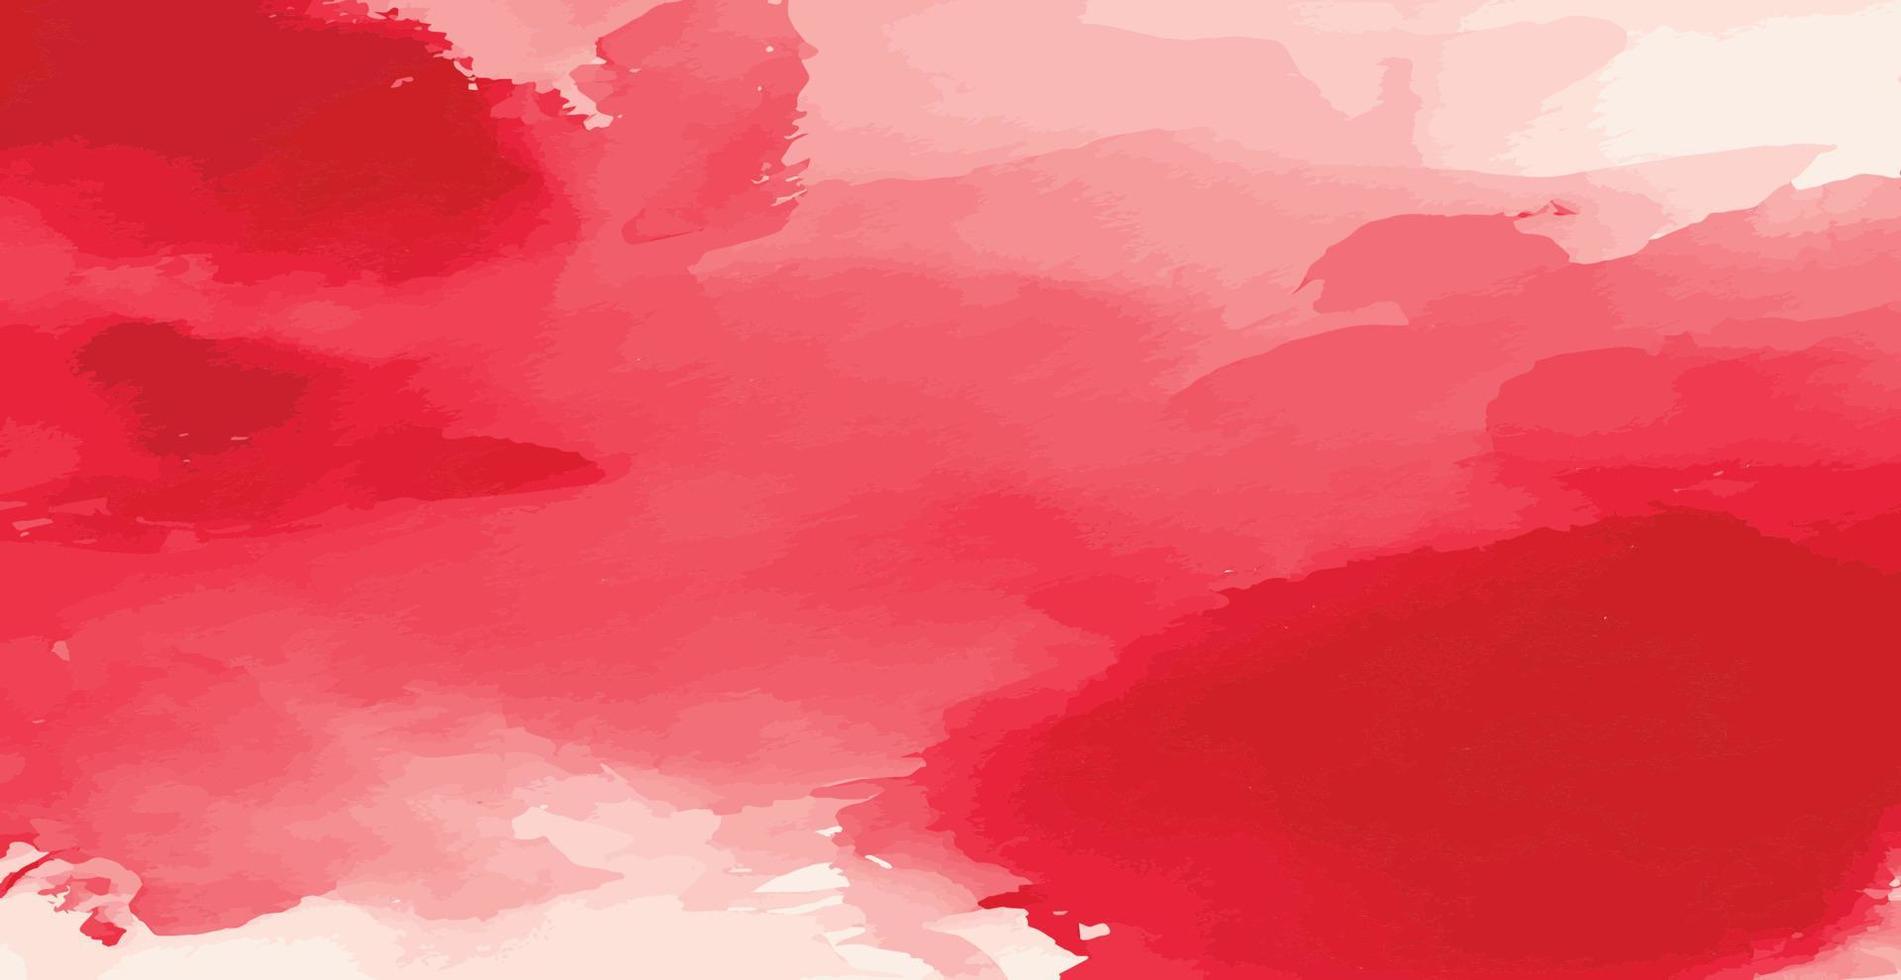 abstract waterverf achtergrond rood en wit papier textuur, kleurrijk waterverf grunge - vector